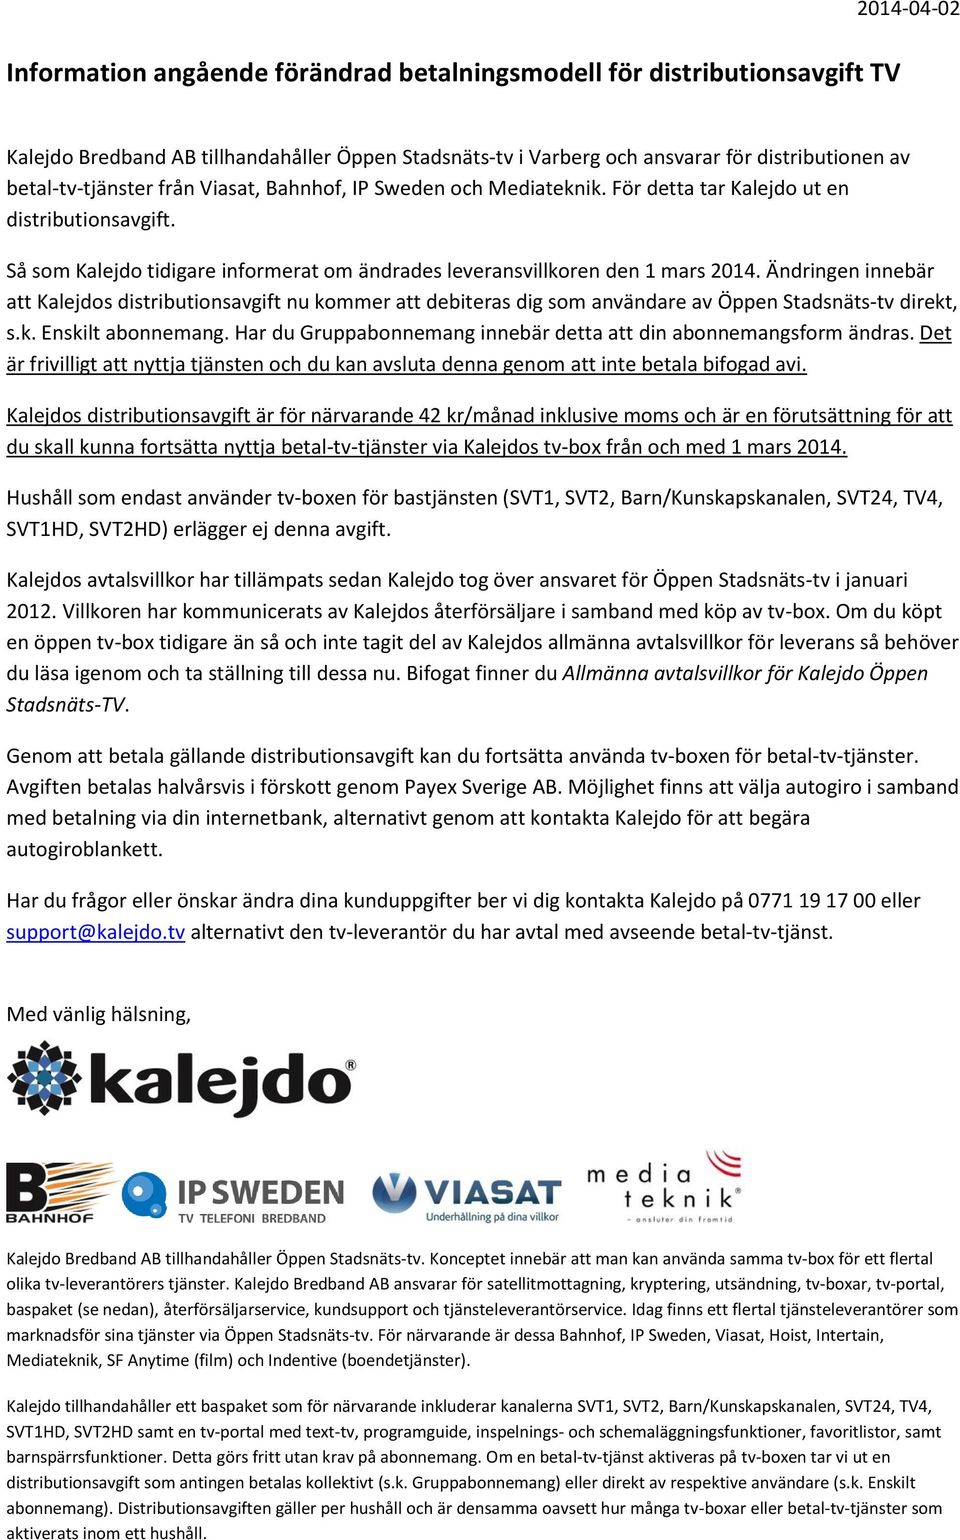 Ändringen innebär att Kalejdos distributionsavgift nu kommer att debiteras dig som användare av Öppen Stadsnäts-tv direkt, s.k. Enskilt abonnemang.